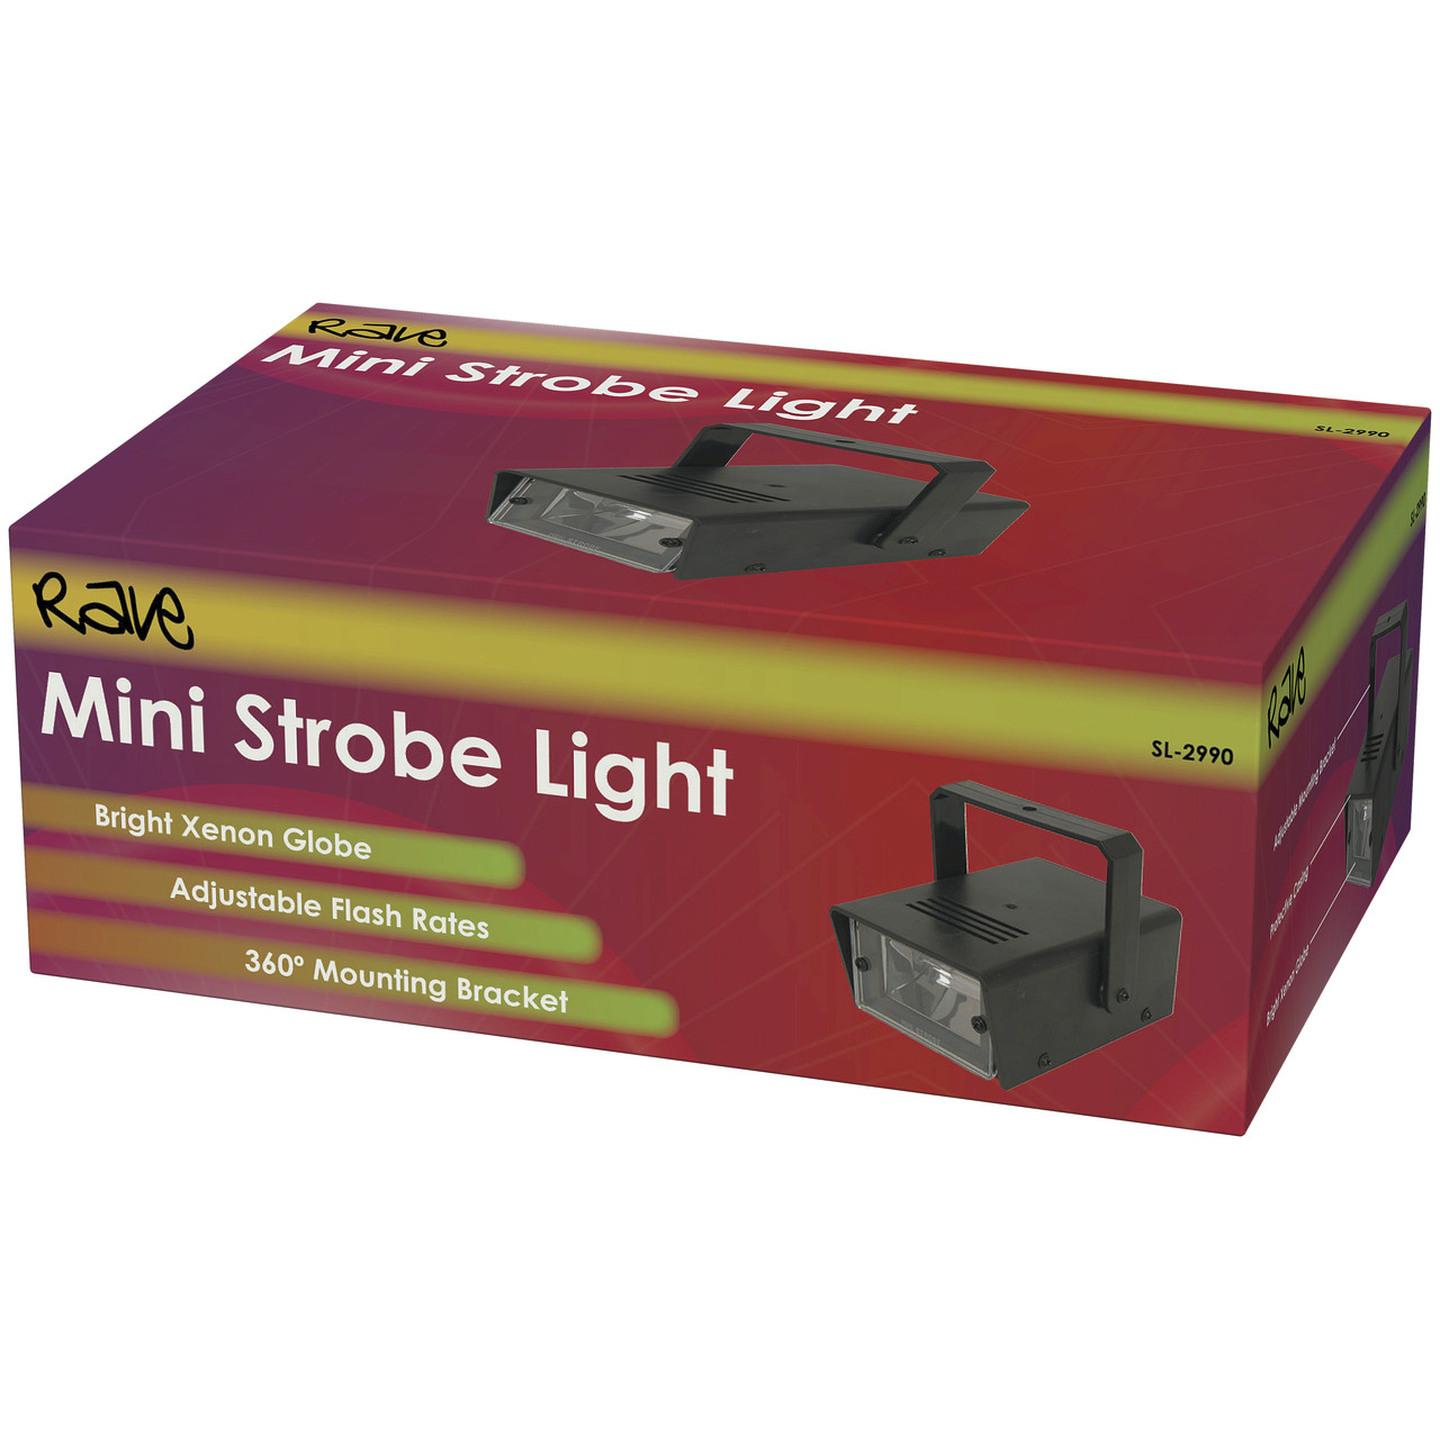 Mini Strobe Light